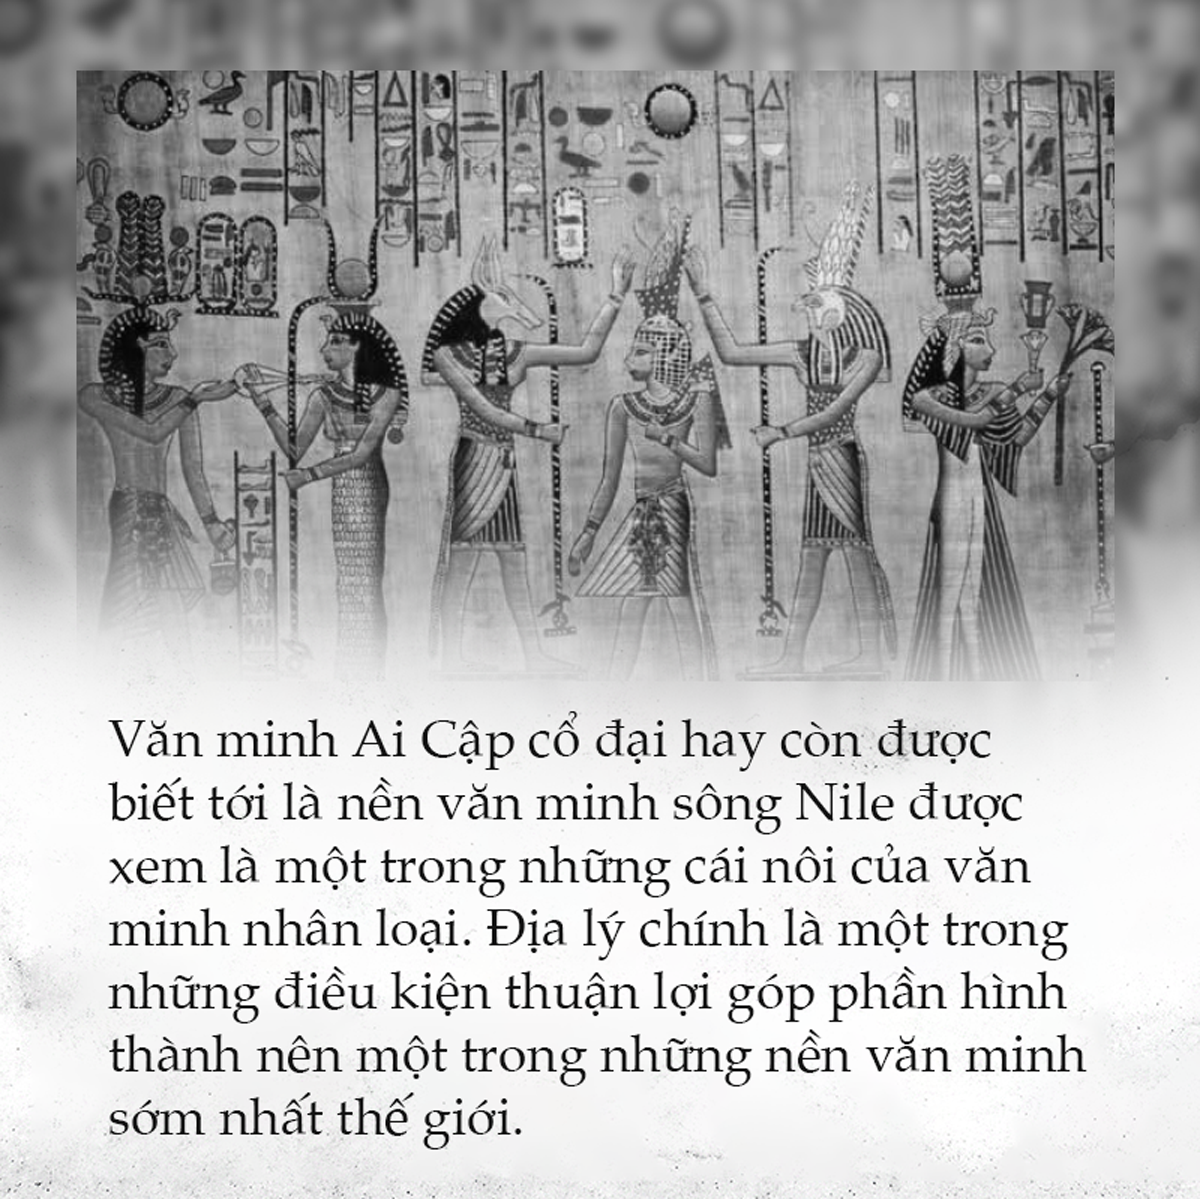 Văn minh Ai Cập - Những ảnh hưởng xuyên không gian và thời gian